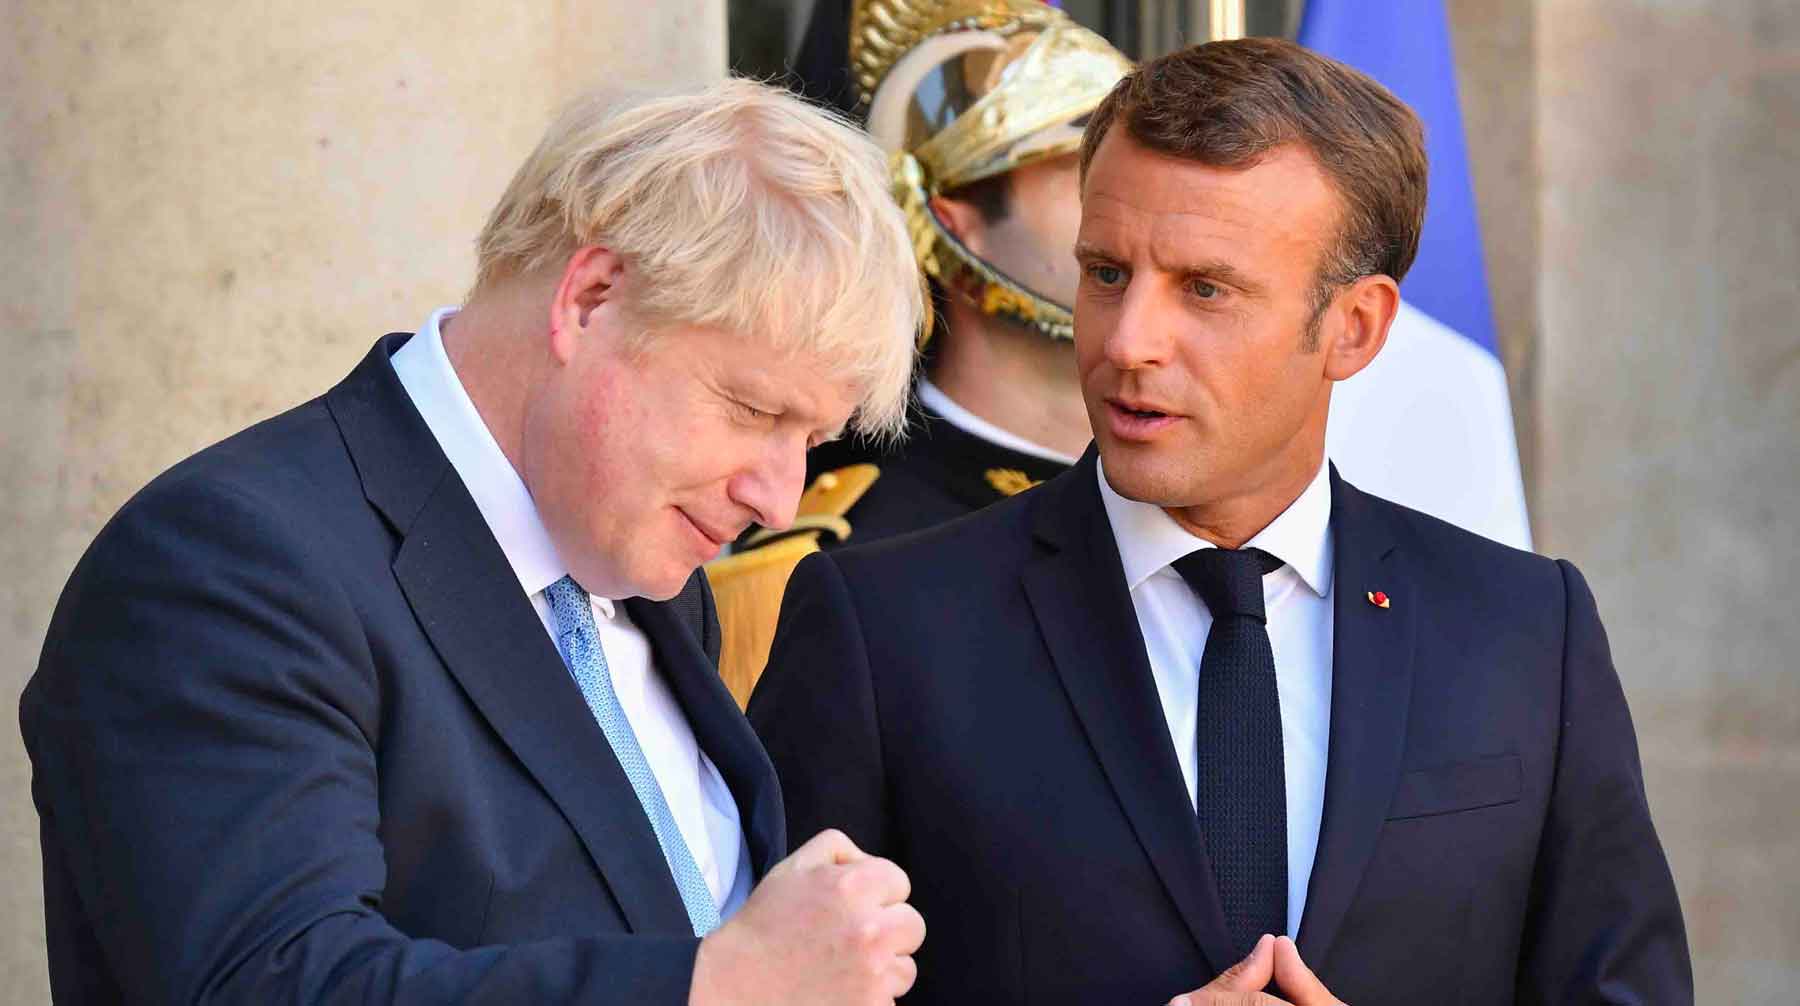 СМИ, в свою очередь, пытаются объяснить поступок британского премьера шуткой Фото: © GLOBAL LOOK press / Julien Mattia